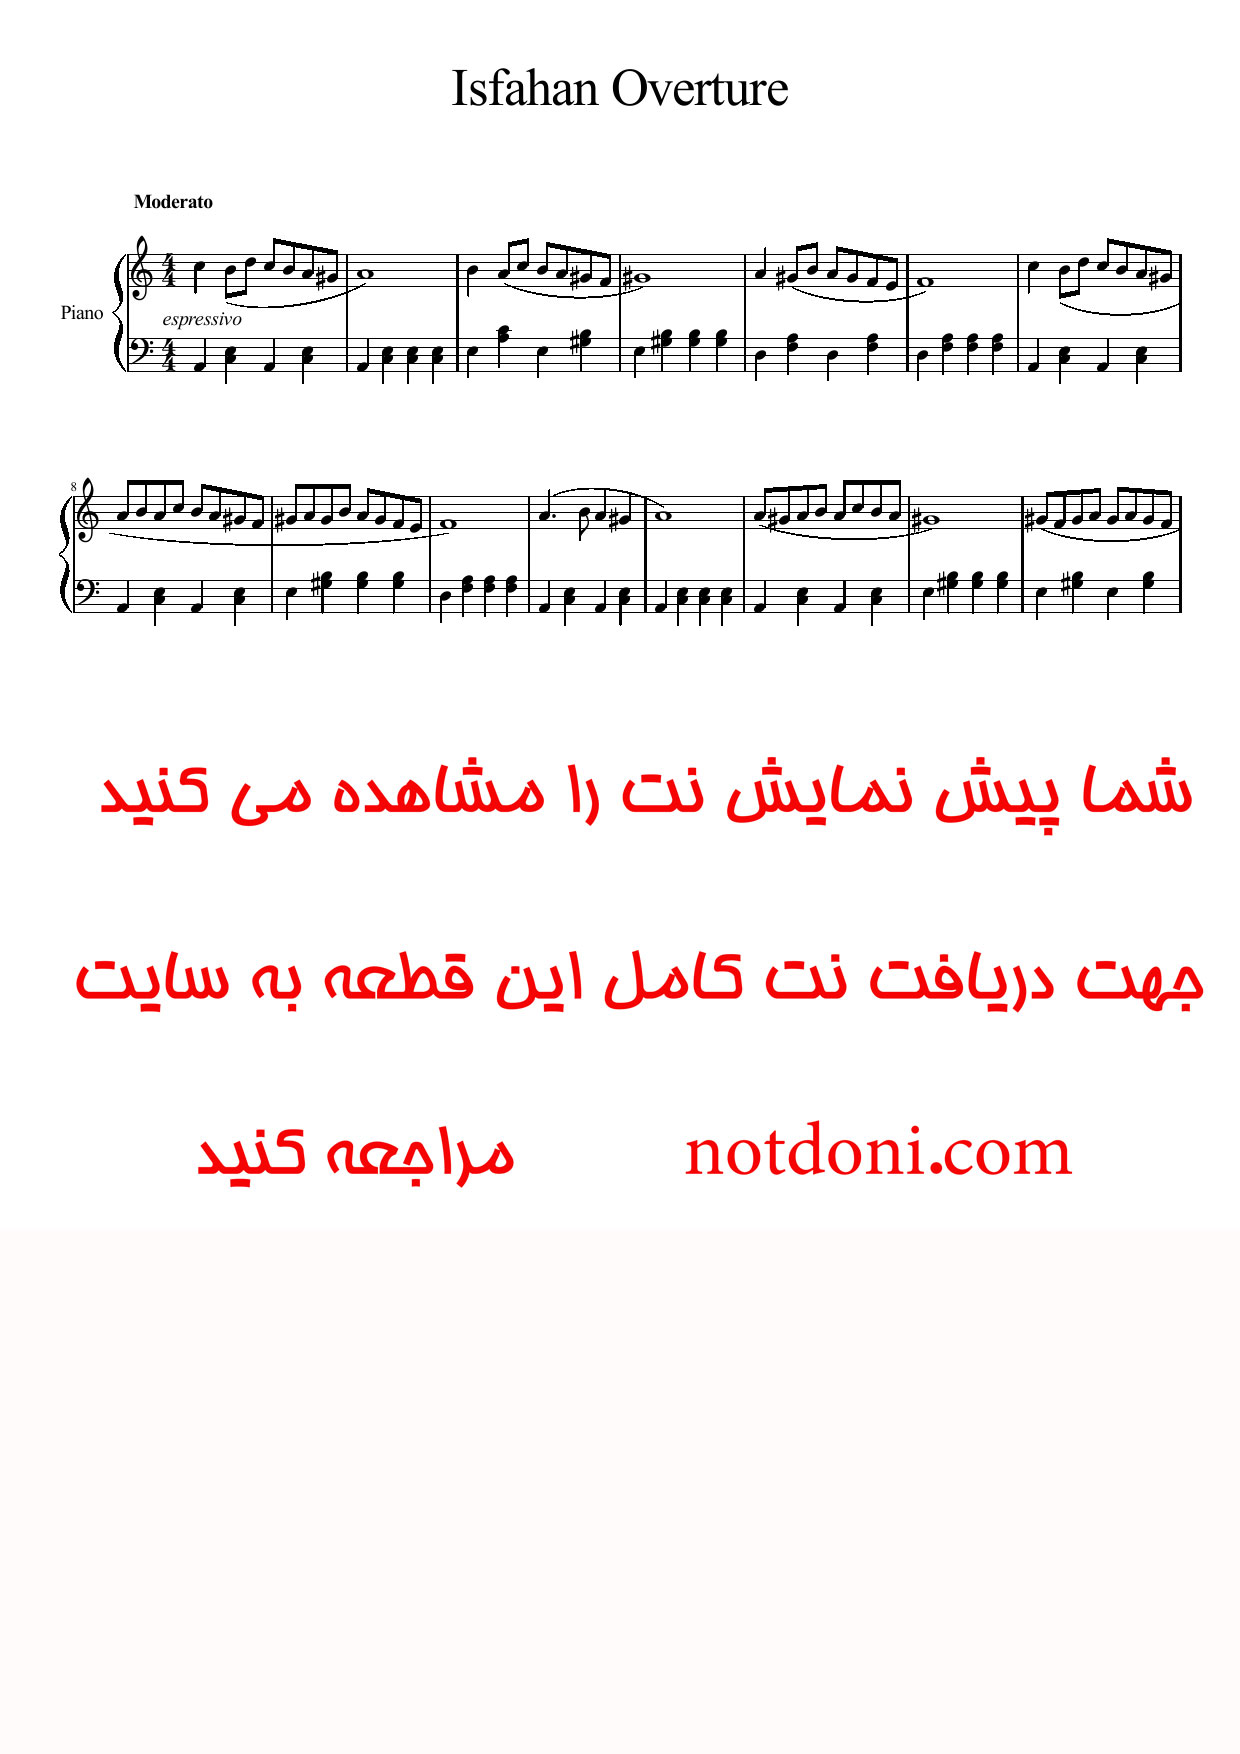 نت پیانوی اورتور اصفهان